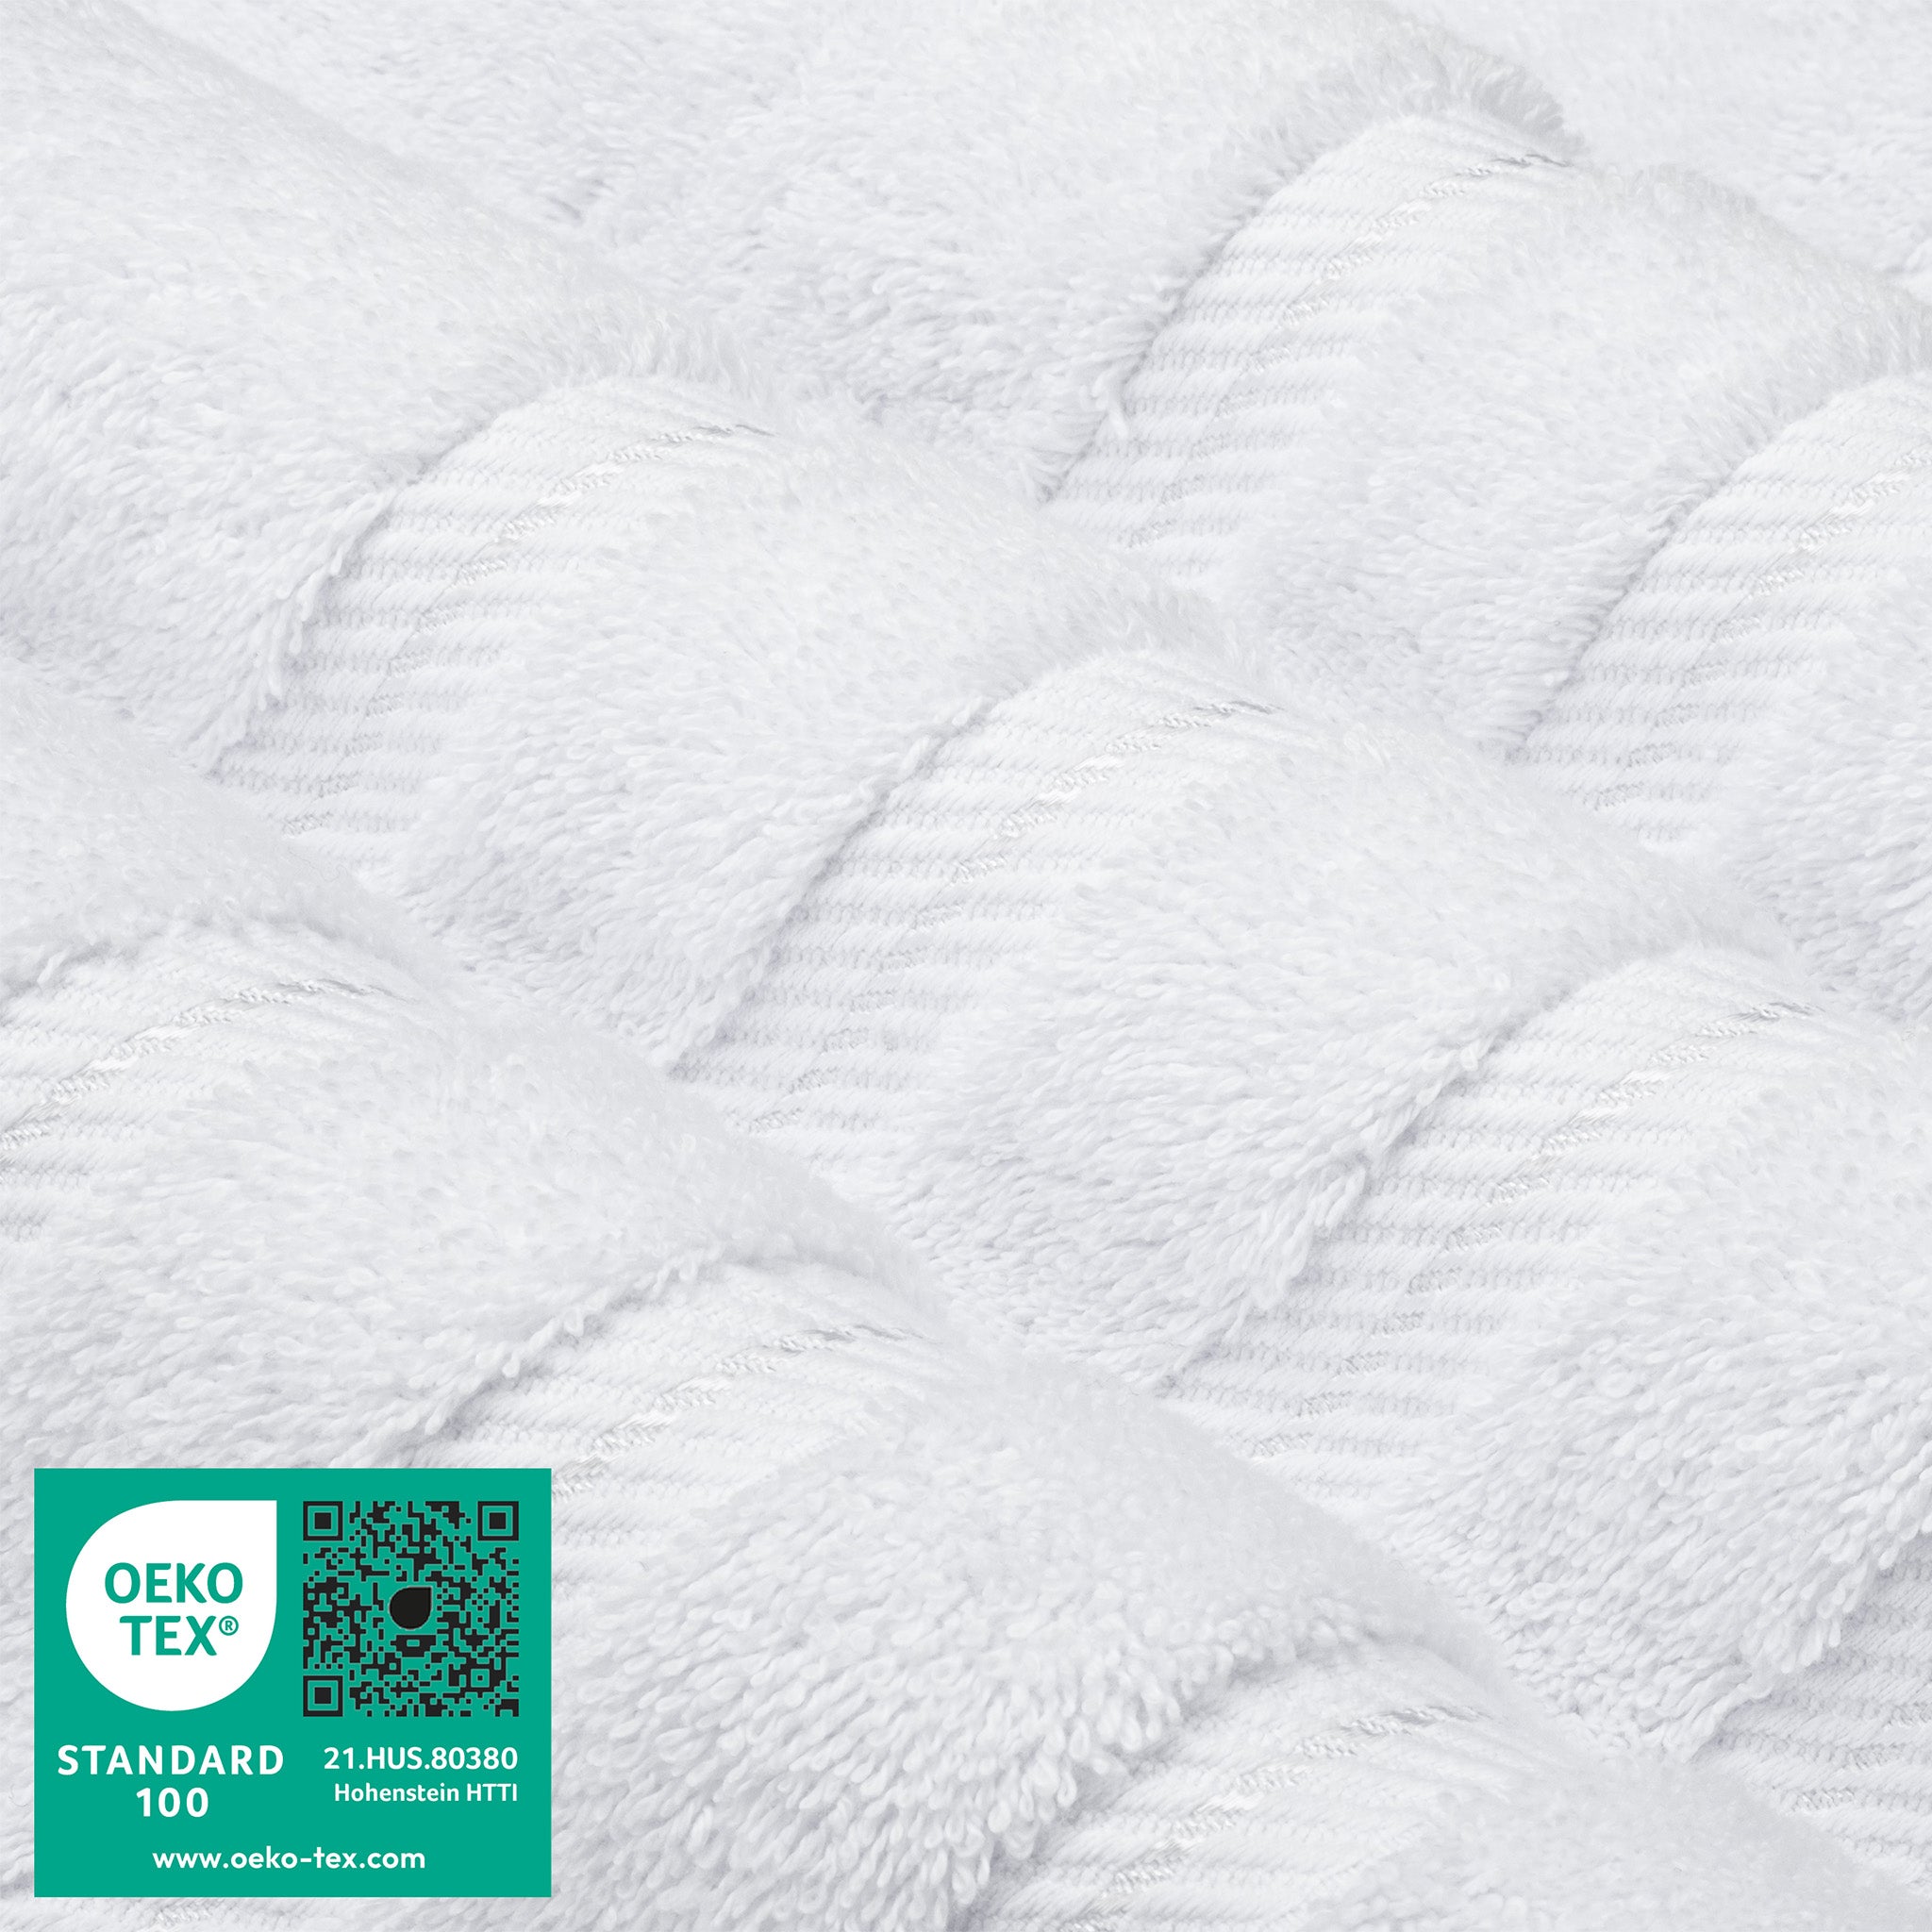 American Soft Linen 100% Turkish Cotton 4 Pack Bath Towel Set Wholesale  white-3